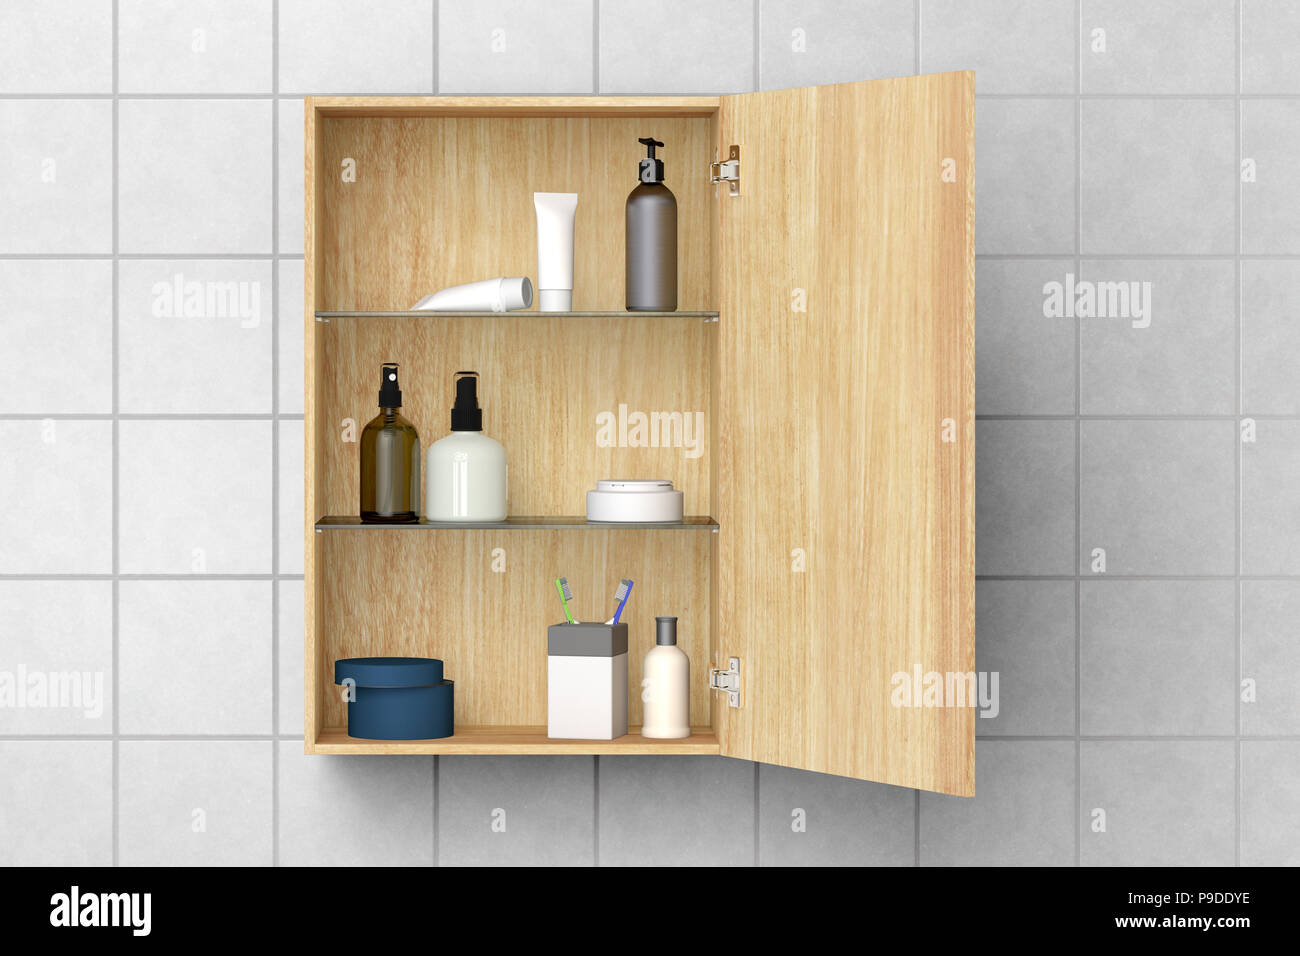 Holz- Badezimmer Schrank mit Kosmetik- und Pflegeprodukte auf weißen  Fliesen Wand mit Freistellungspfad isoliert Öffnen. 3D-Darstellung  Stockfotografie - Alamy